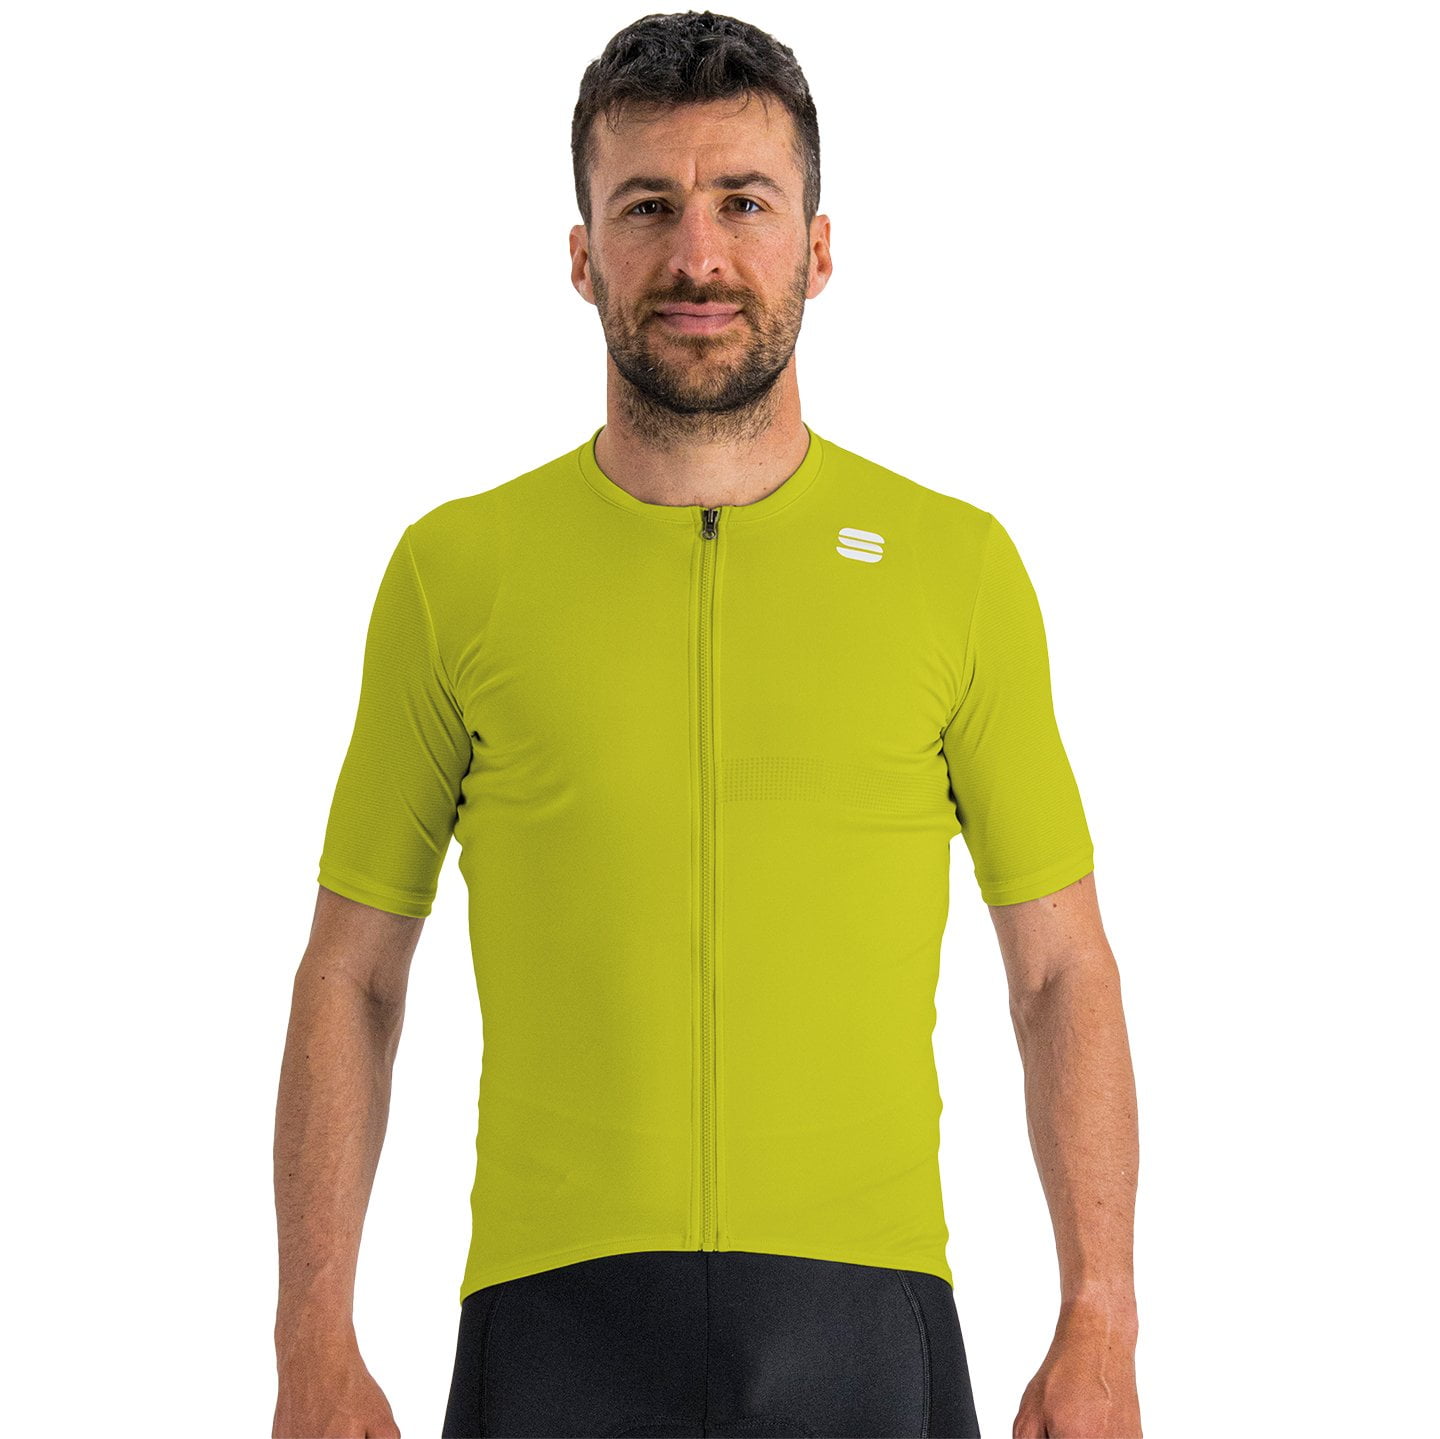 SPORTFUL Matchy Short Sleeve Jersey Short Sleeve Jersey, for men, size M, Cycling jersey, Cycling clothing